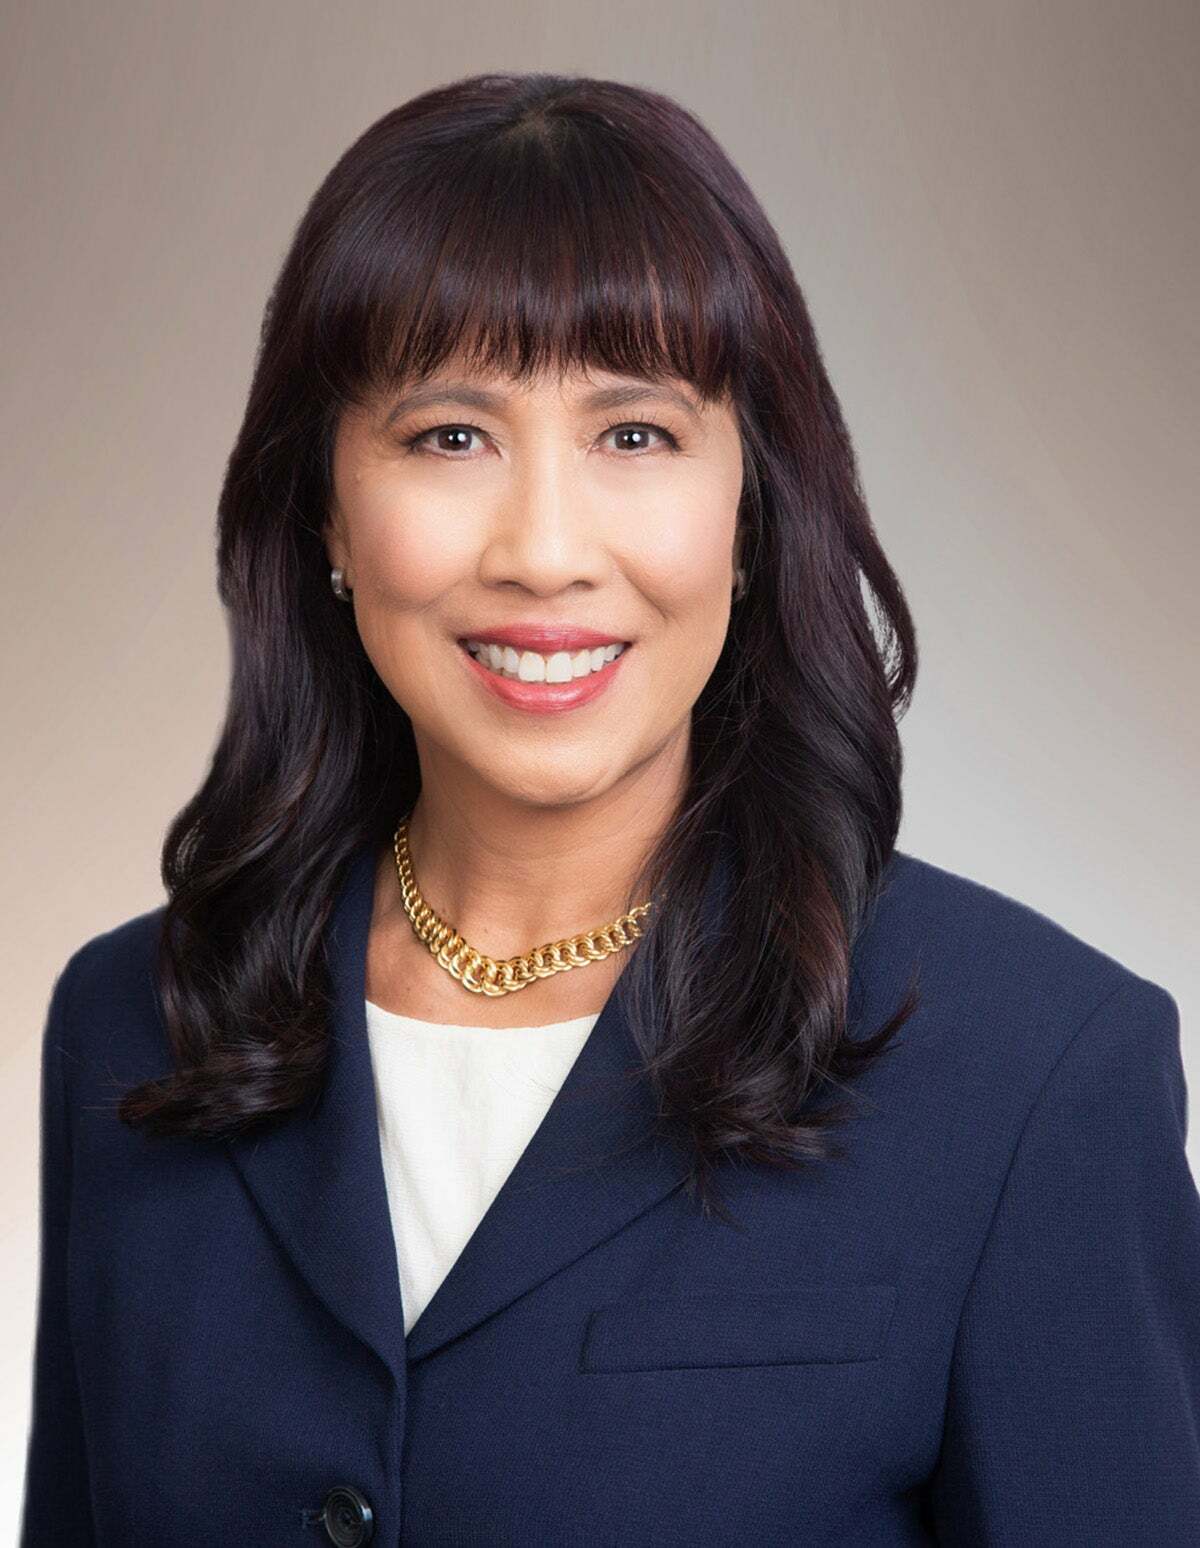 Michelle Doo Van Rafelghem (RA), Real Estate Salesperson in Honolulu, Advantage Realty